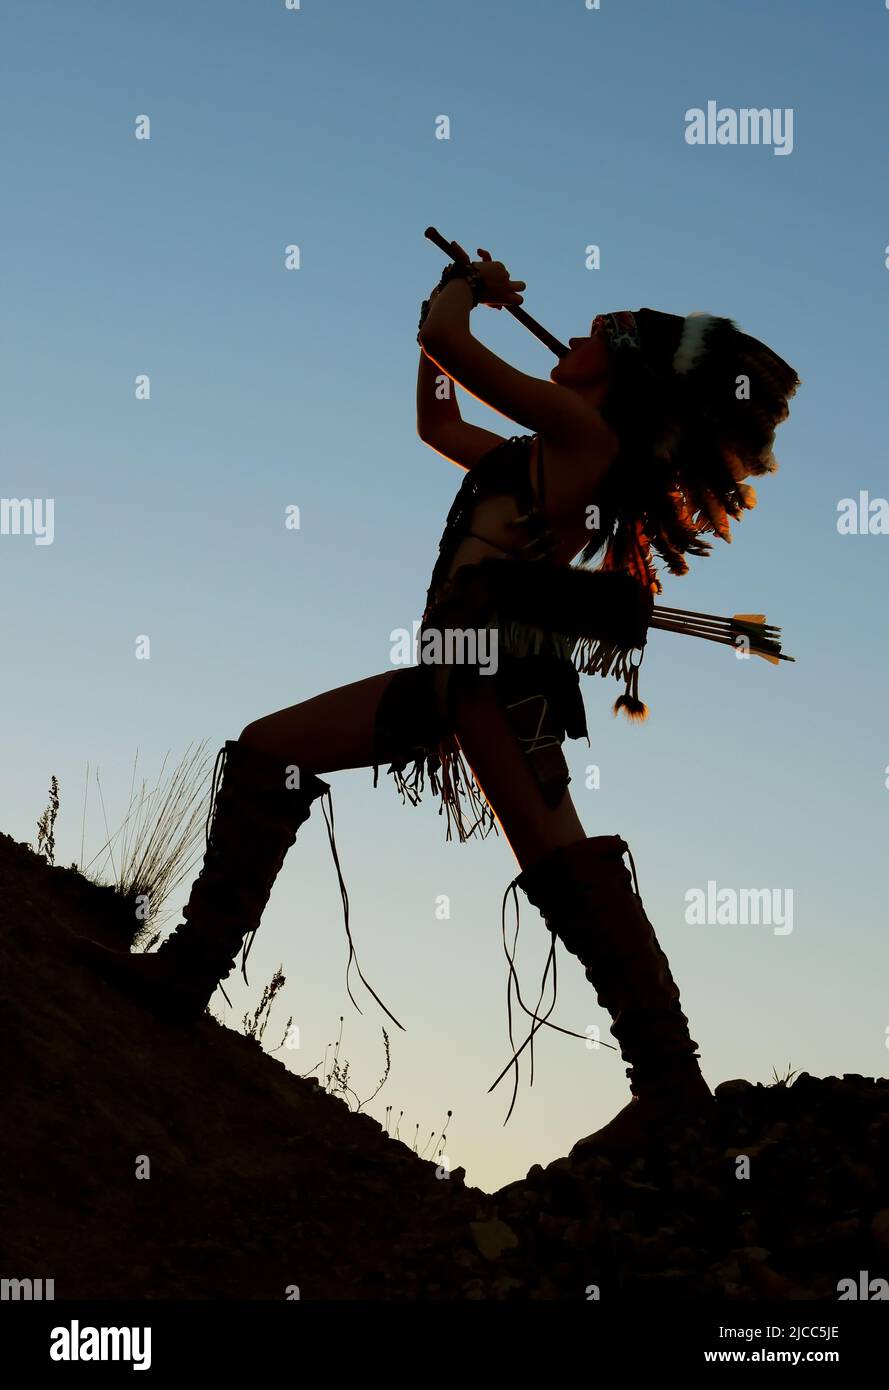 Une jeune fille indienne amérindienne joue la flûte au coucher du soleil. La fille est silhouetée comme le soleil se couche derrière elle. Banque D'Images